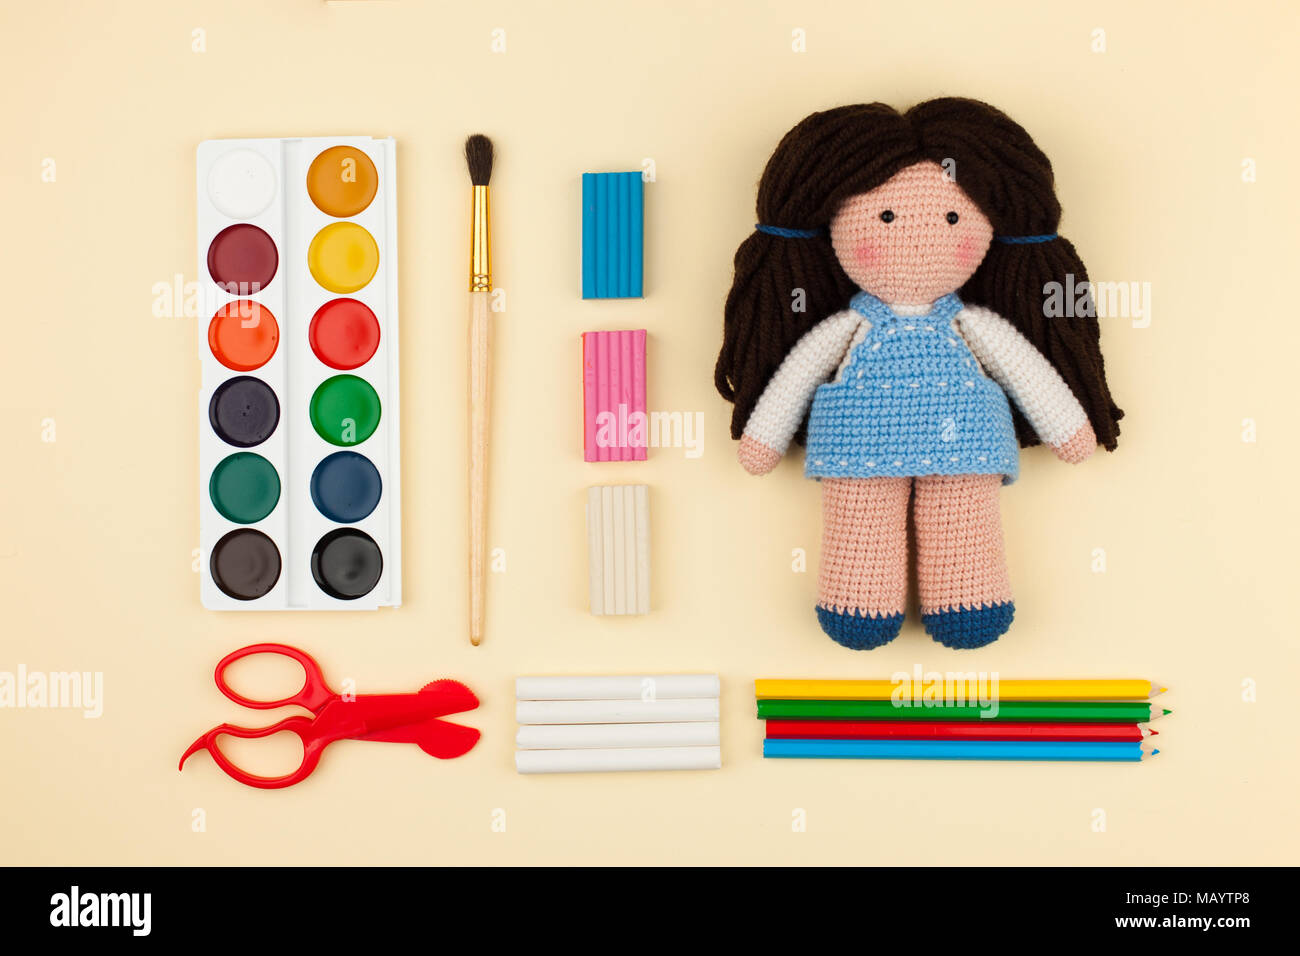 Oder Puppe mit braunen Haaren, Aquarelle, Bürsten Papier auf einem gelben Hintergrund, das Konzept von Urlaub, Kreativität und die Entwicklung der Kinder Stockfoto